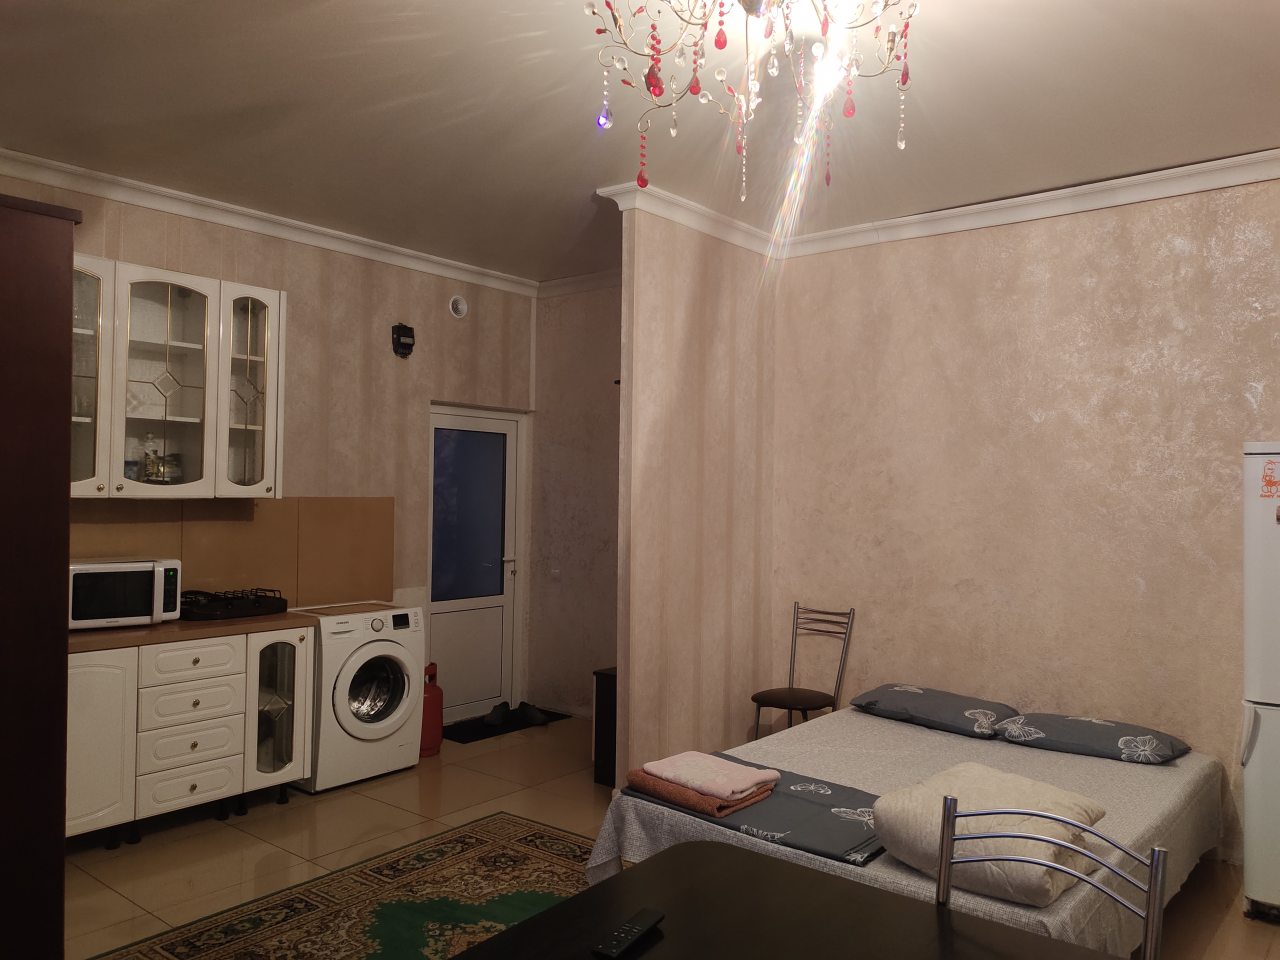 Апартаменты (Апартаменты с собственной террасой) гостиницы Гостиница, Наро-Фоминск